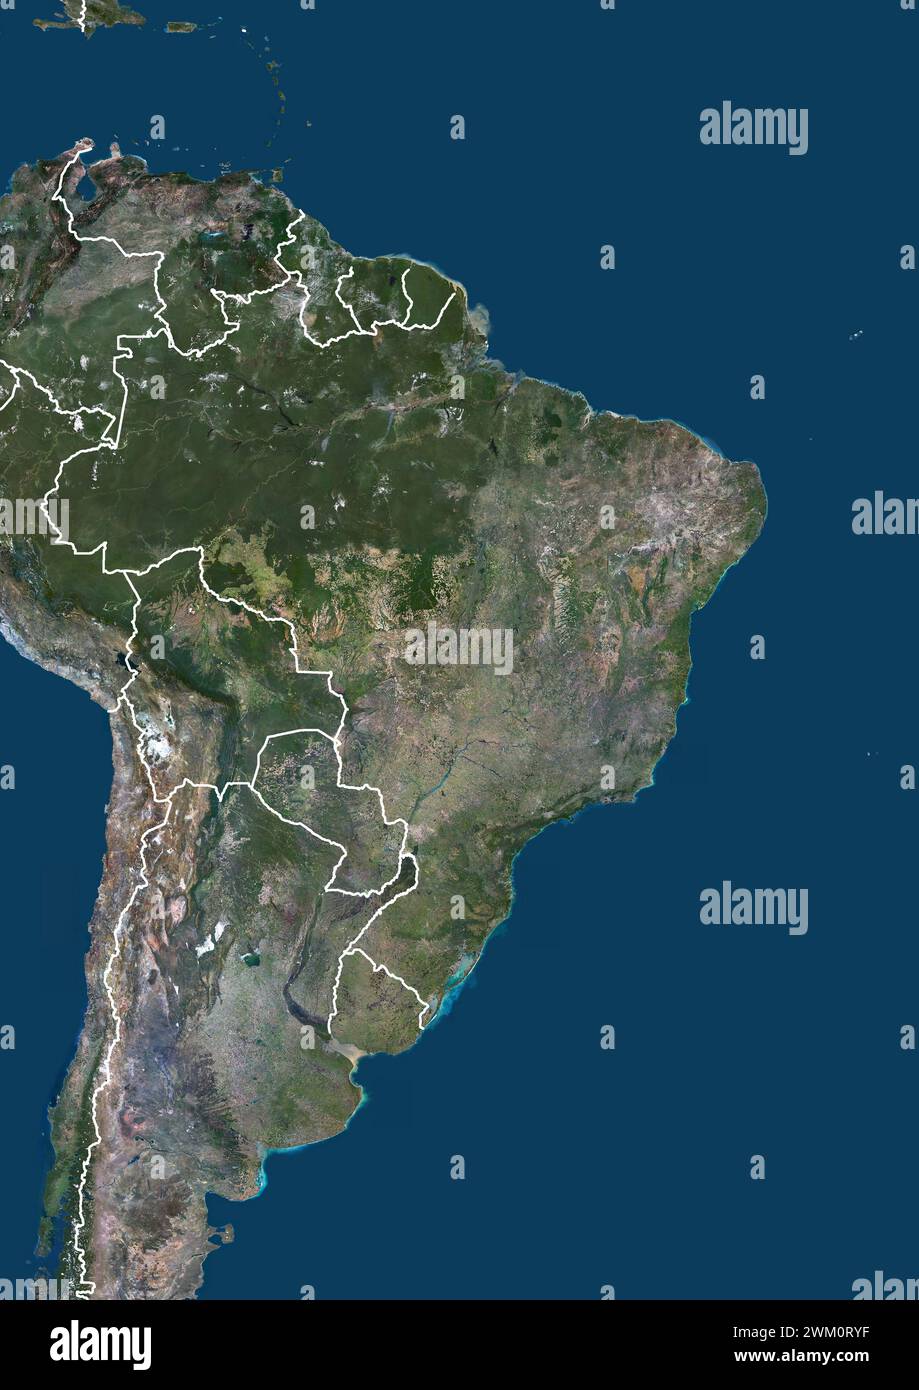 Imagen satelital en color de Brasil y países vecinos (Guyana Francesa, Surinam, Guyana, Venezuela, Bolivia, Paraguay, Uruguay), con fronteras. Foto de stock